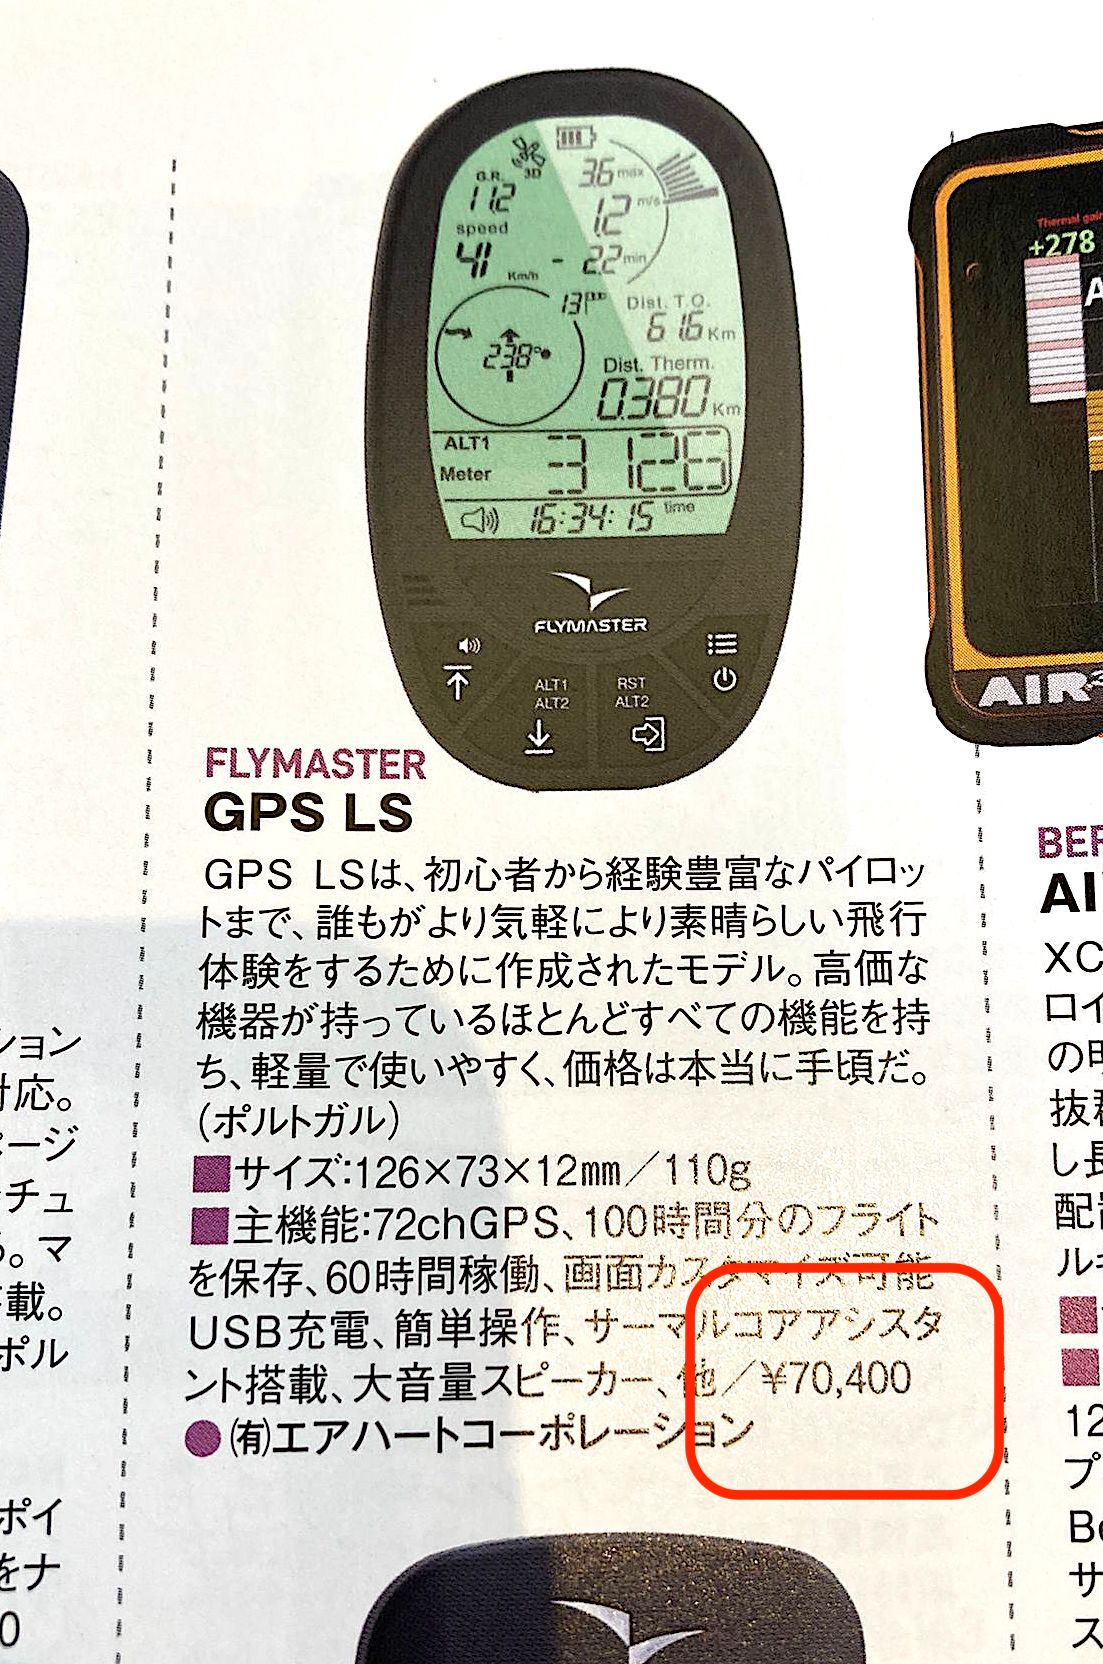 FLYMASTER GPS LS (傷)